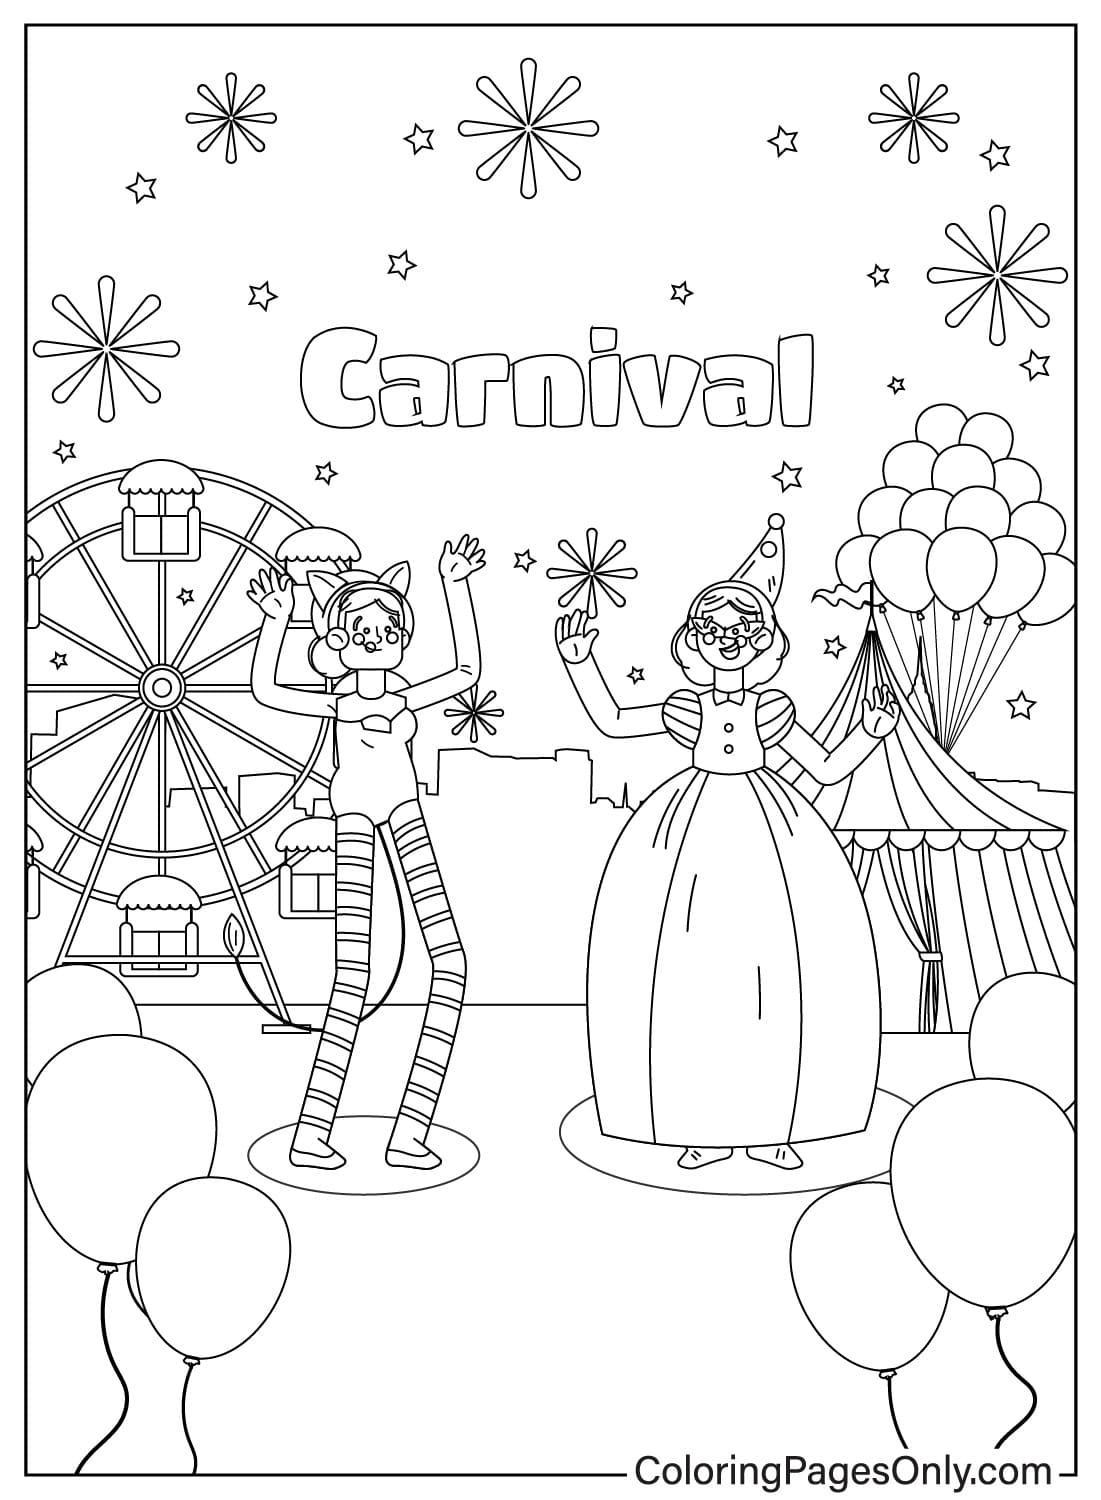 Coloriage Carnaval Imprimable Gratuitement à partir de Carnaval